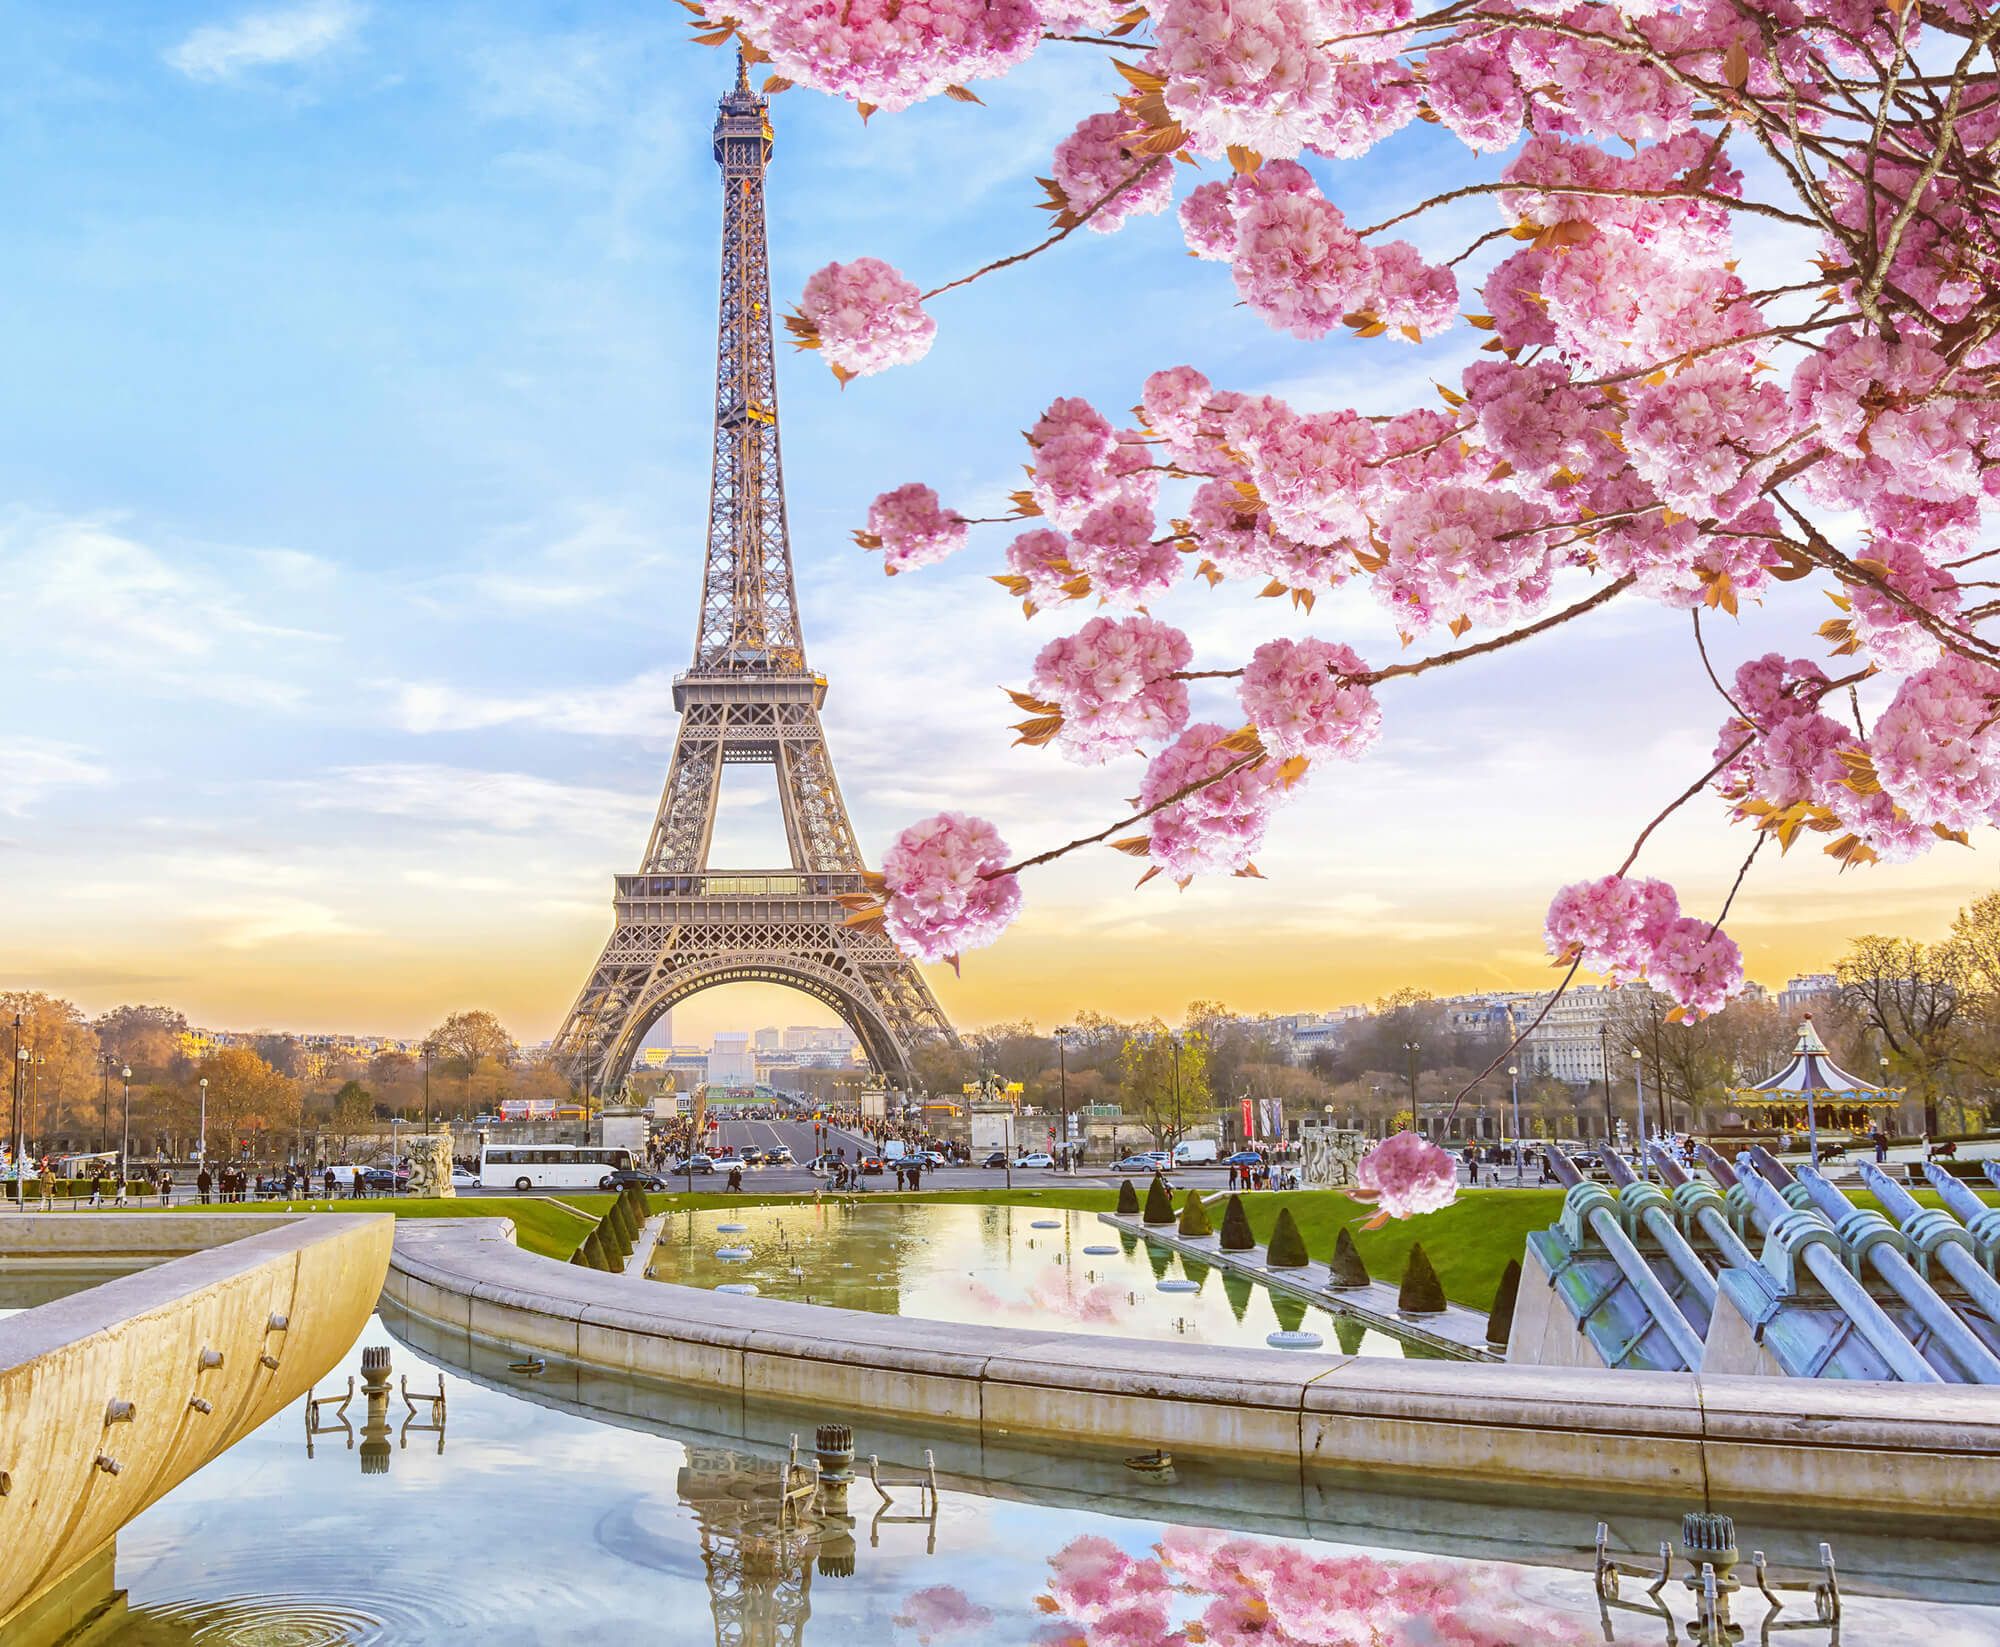 Fondos de la Torre Eiffel - Los mejores fondos de la Torre Eiffel gratis